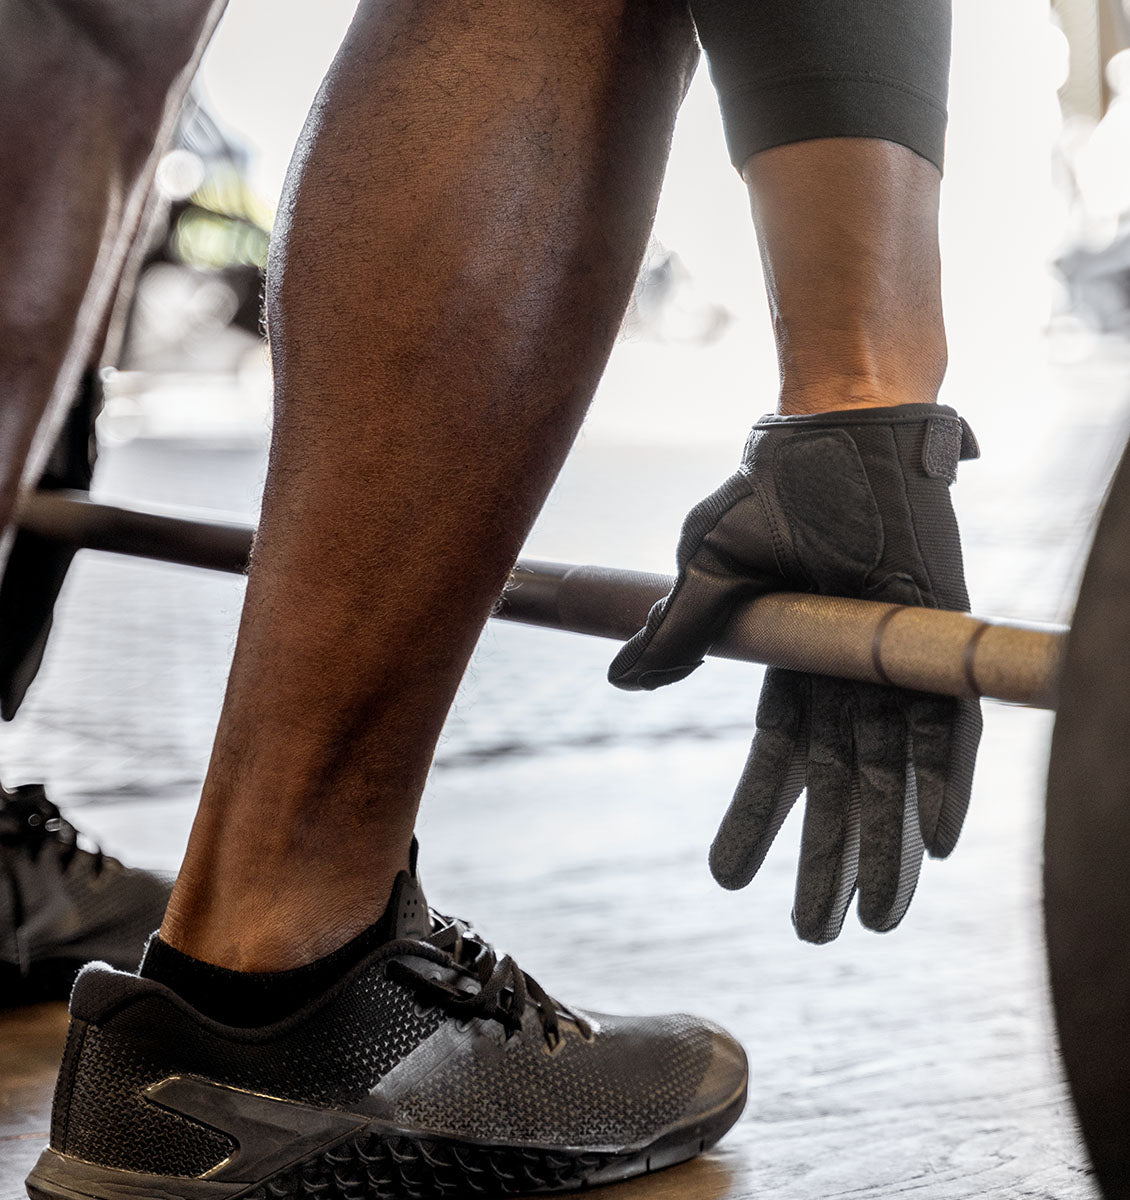 Harbinger Power Protect Gloves - Men's - Black - Lifestyle - 5